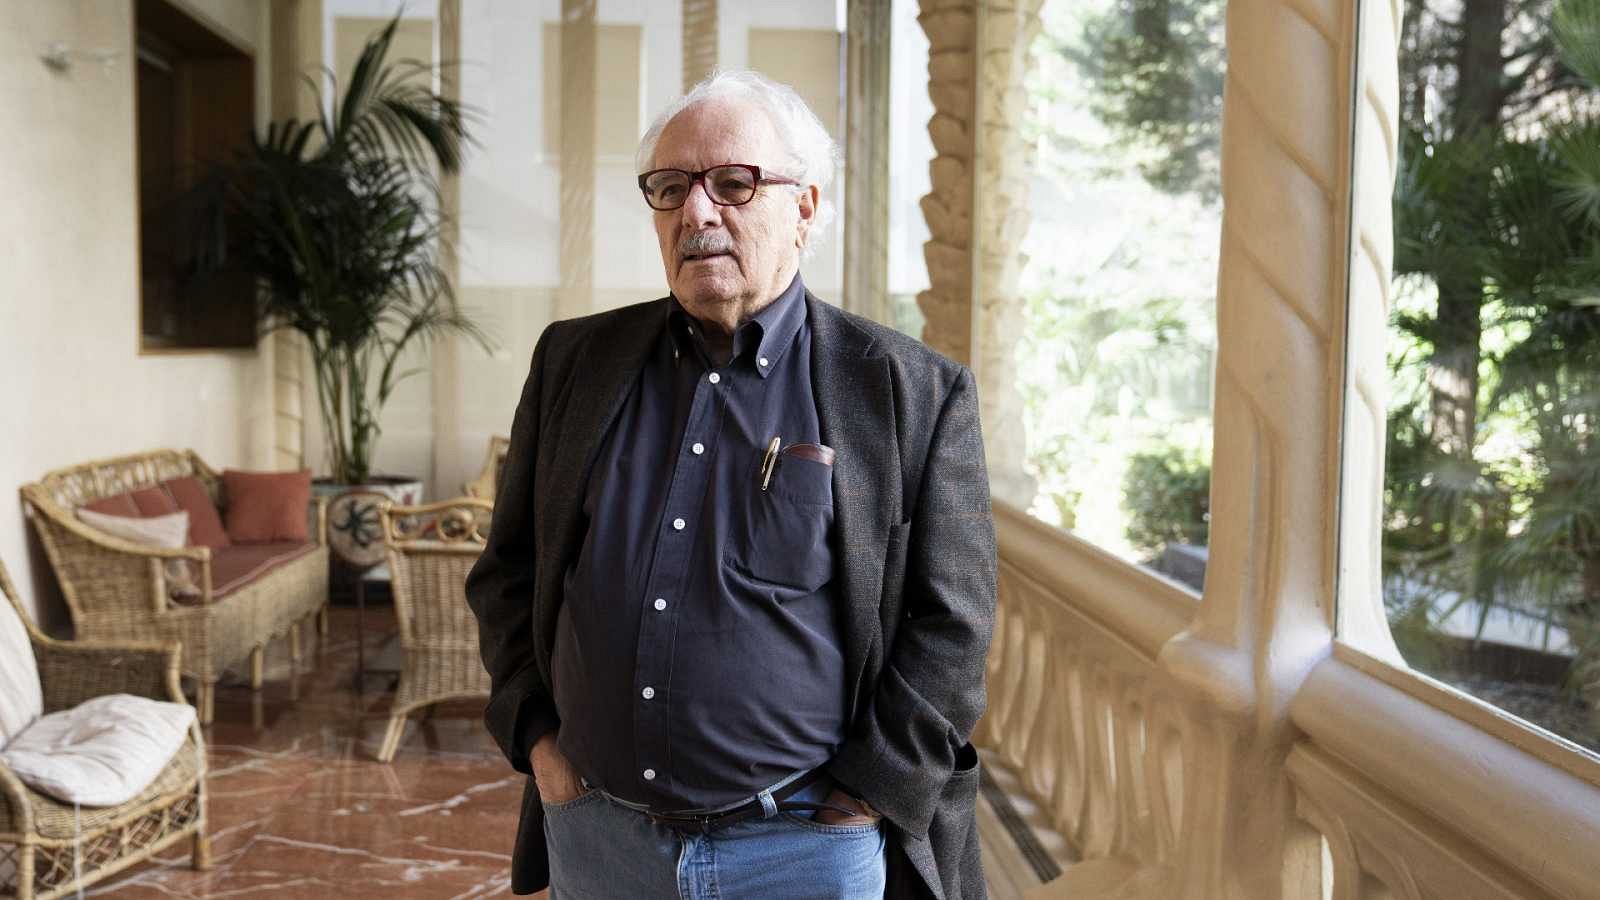 Fallece el escritor y periodista Javier Reverte a los 76 años: el mundo se queda sin un explorador